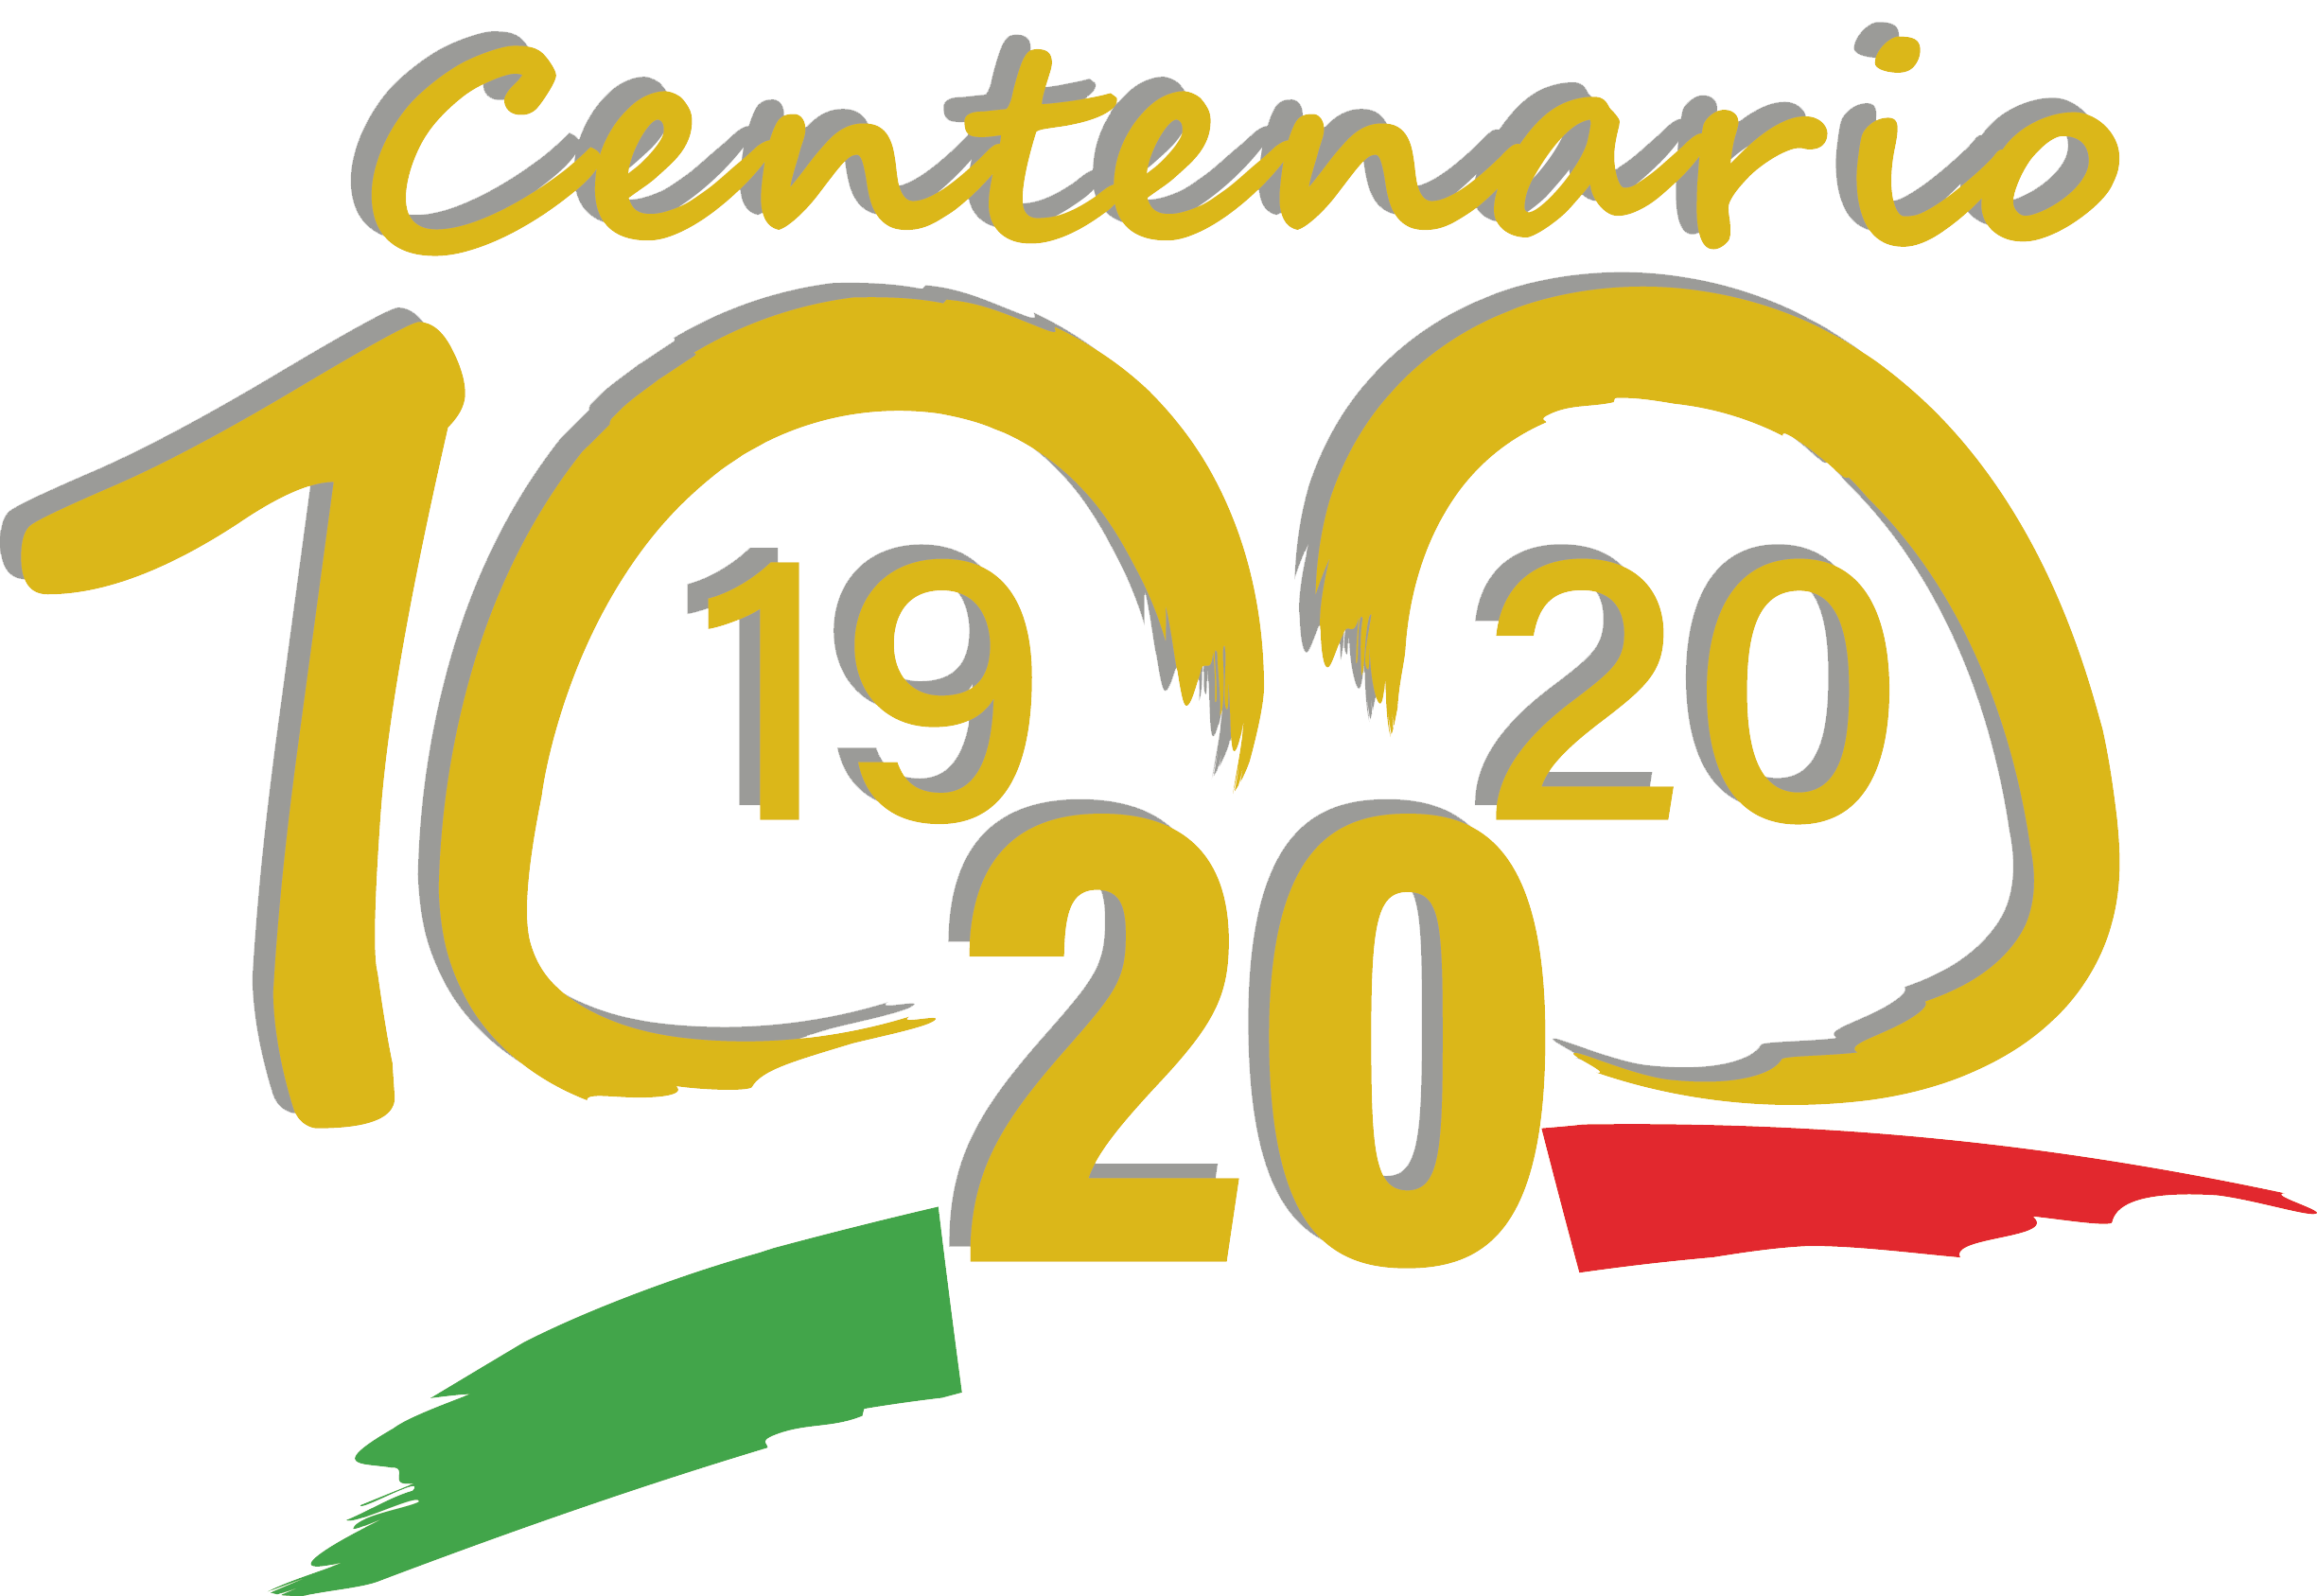 Logo del centenario dell'UICI. In alto la scritta centenario in dorato.Al centro il numero 100 in dorato.In basso, il tricolore italiano con sopra lindicazione dellanno di fondazione (1920) e dellanno attuale (2020)